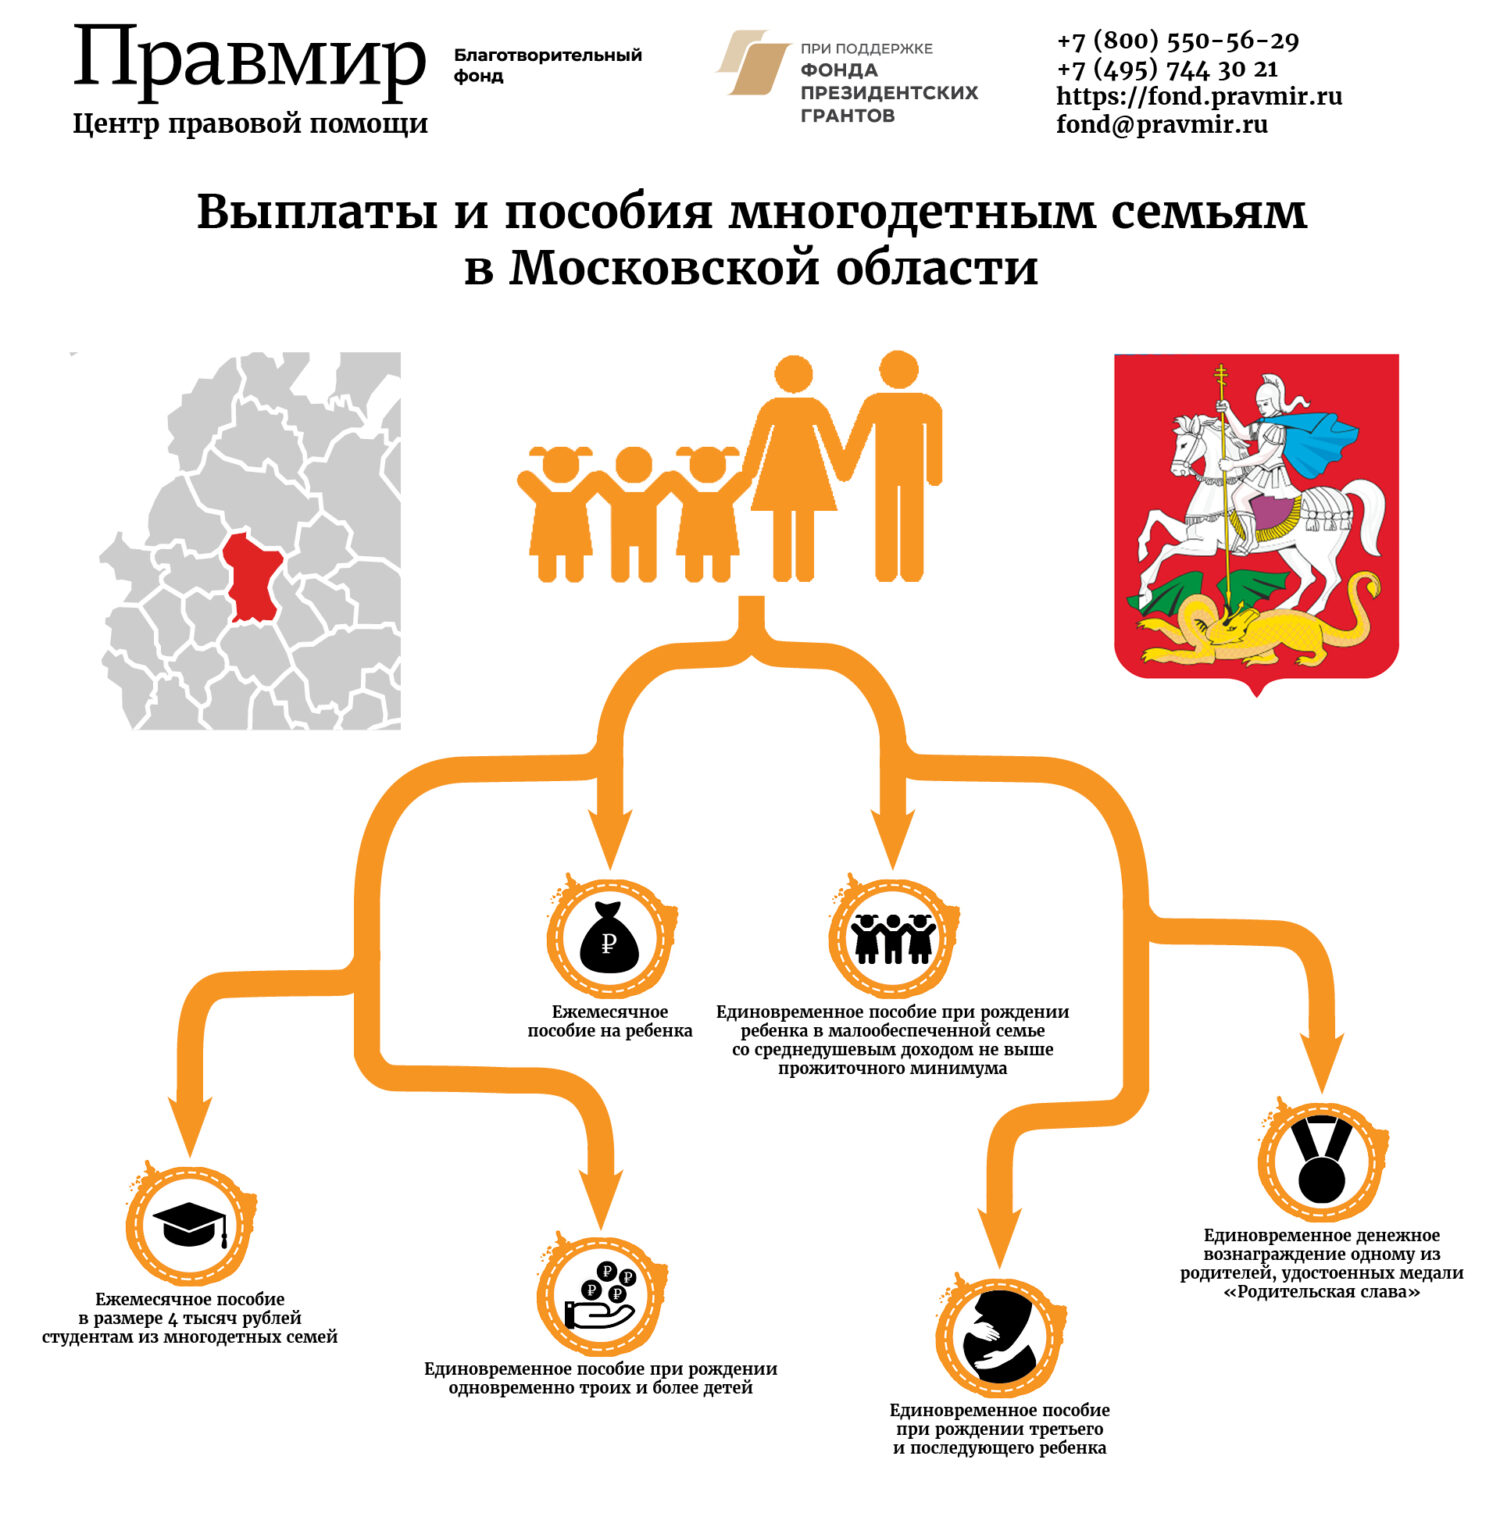 Выплаты и пособия многодетным семьям в Московской области